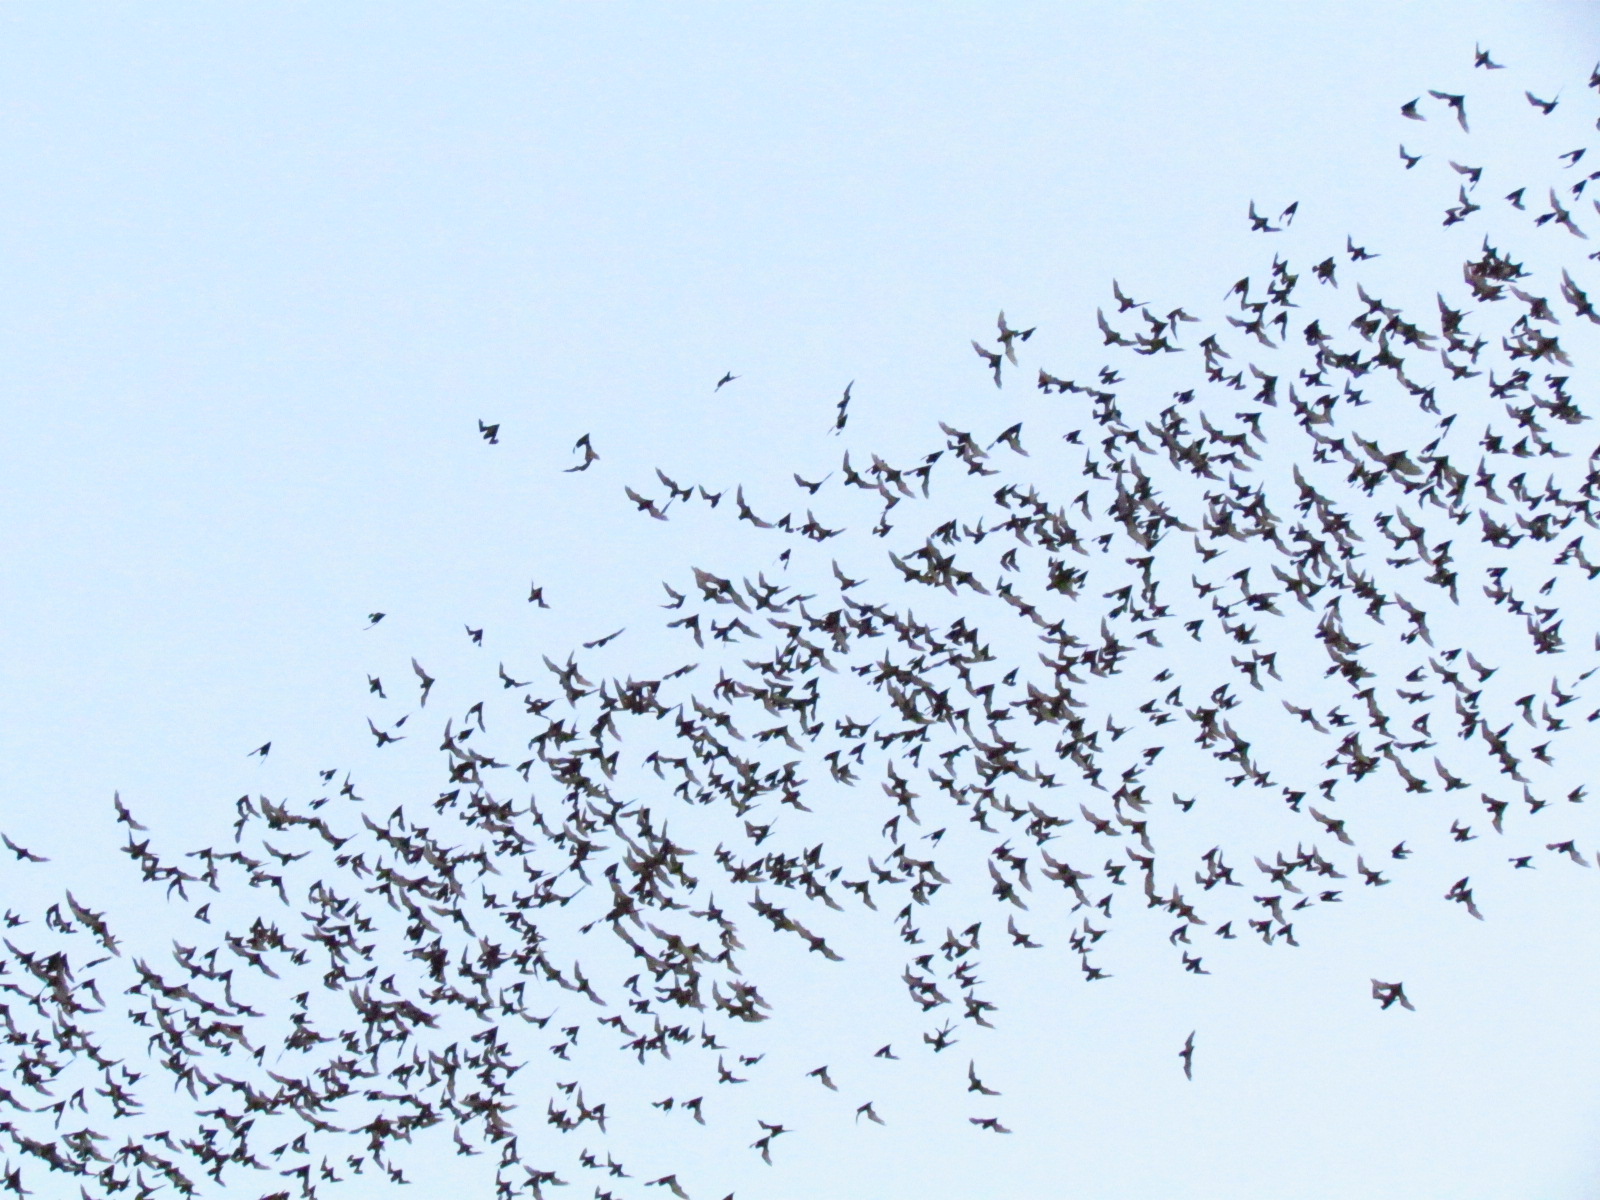 Bats, Cambodia